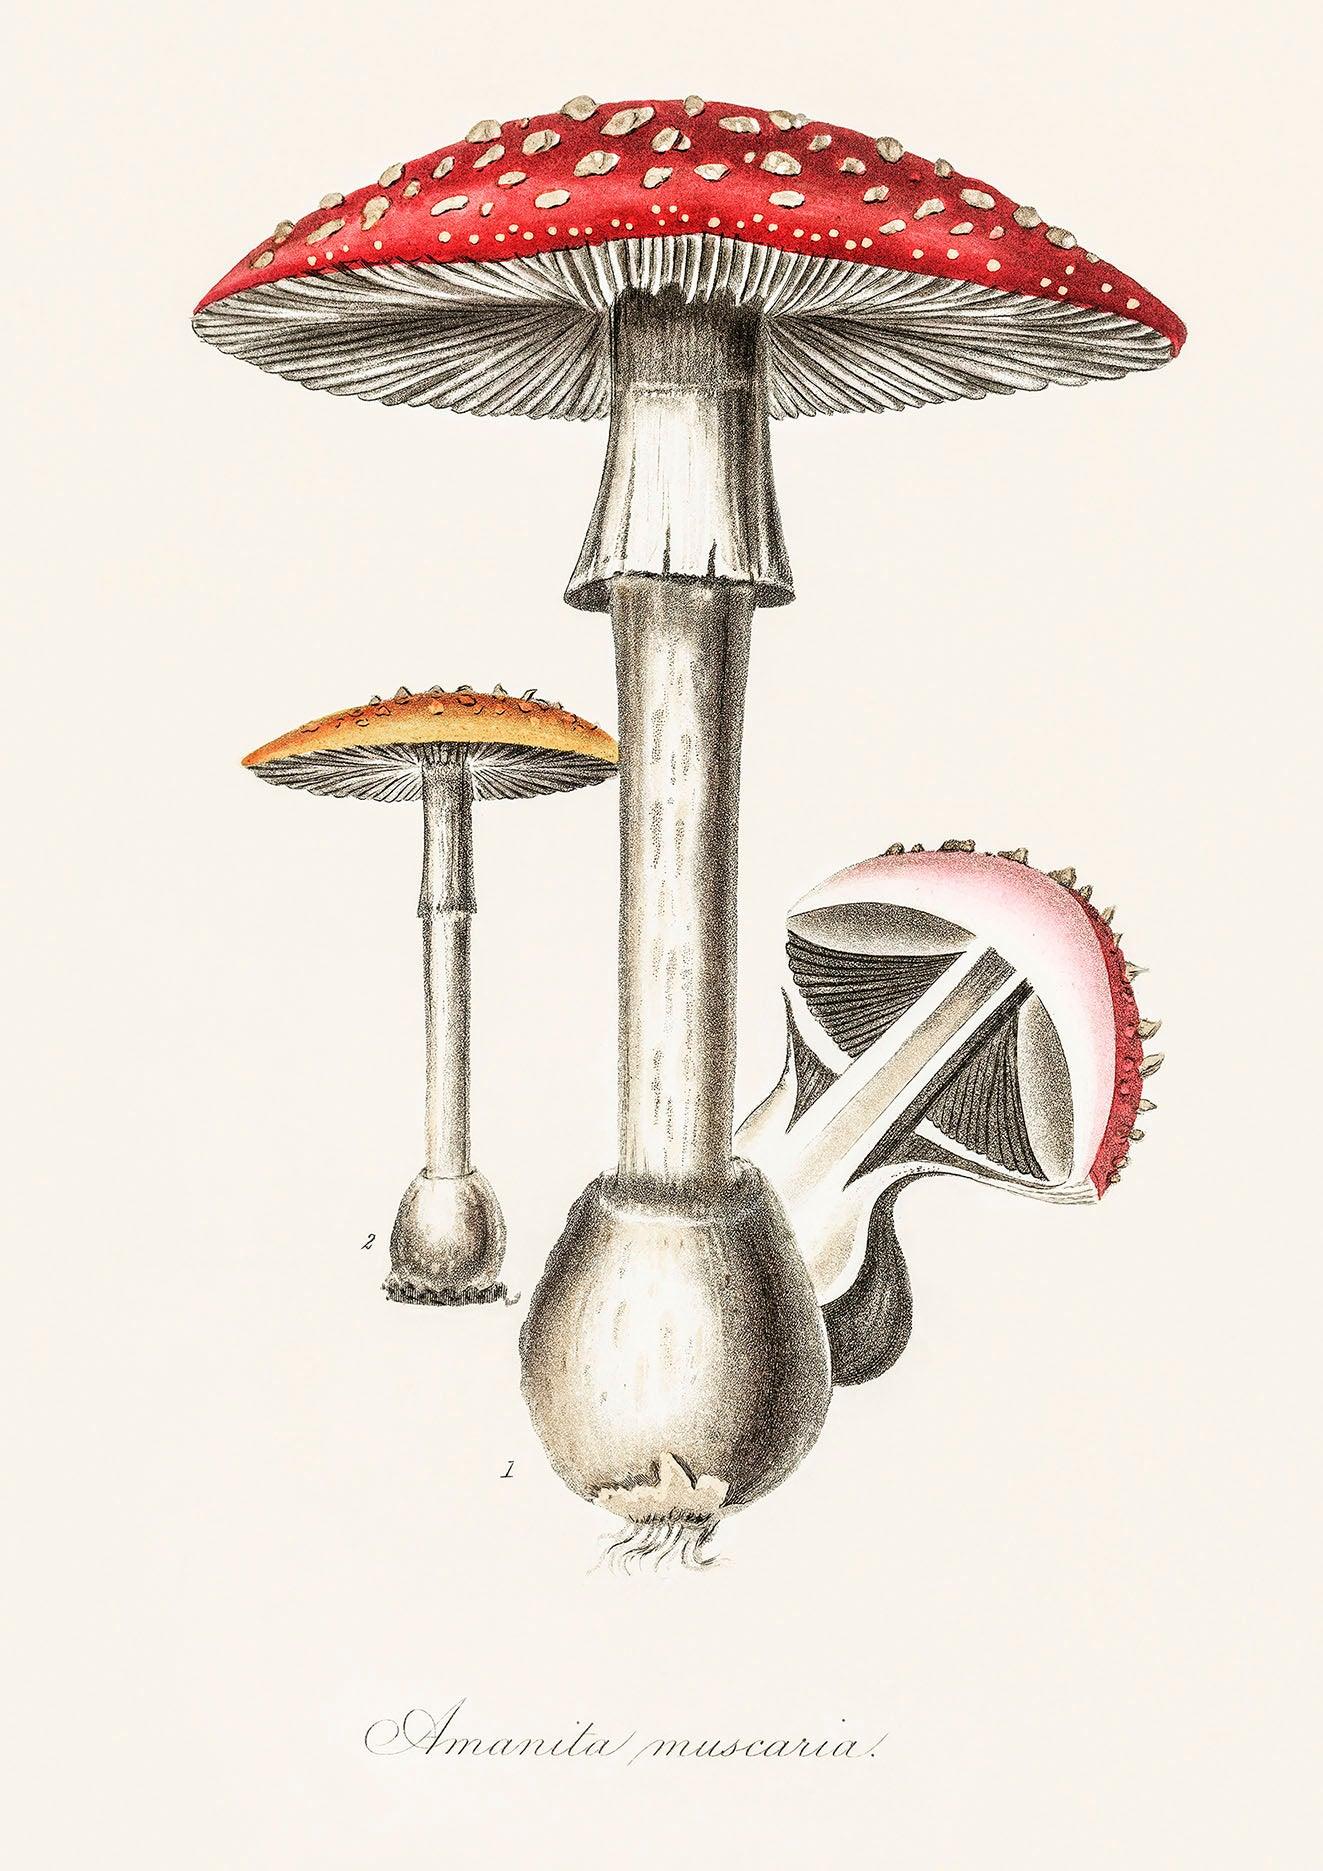 FUNGI PRINTS: Vintage Mushroom Toadstool Art Illustrations - Pimlico Prints